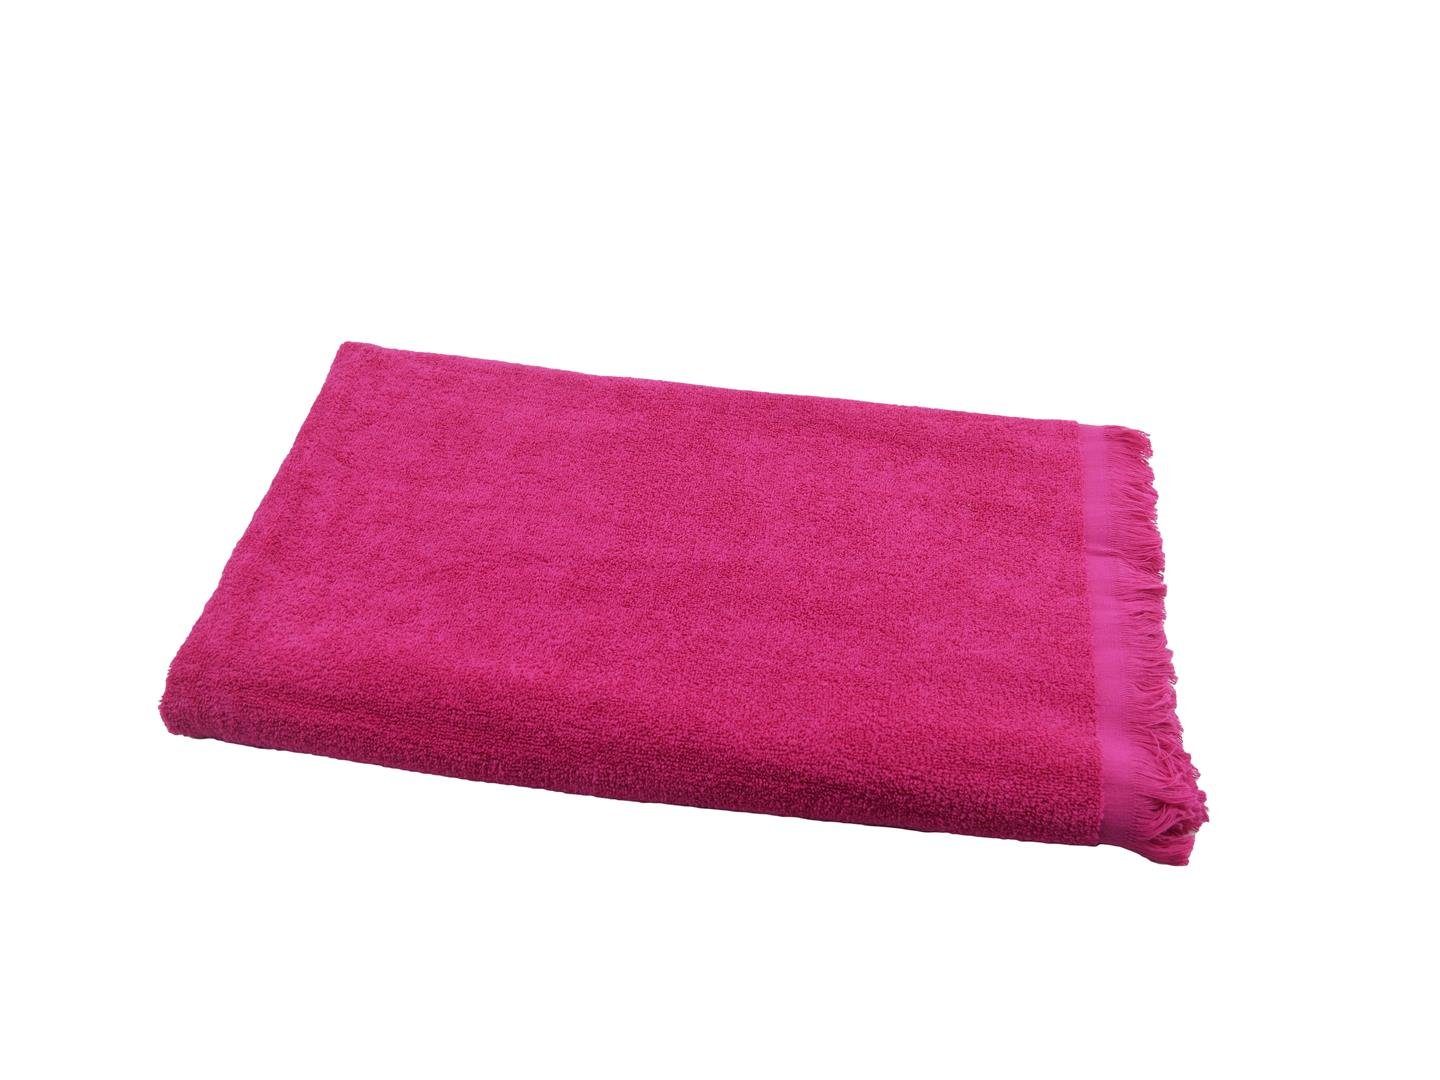 90x180 cm, Sensepura saugstarkes Saunatuch (1-St), Handtuch Badetuch Sauna Hamamtuch gerade Baumwolle pink, Frottee Fransen